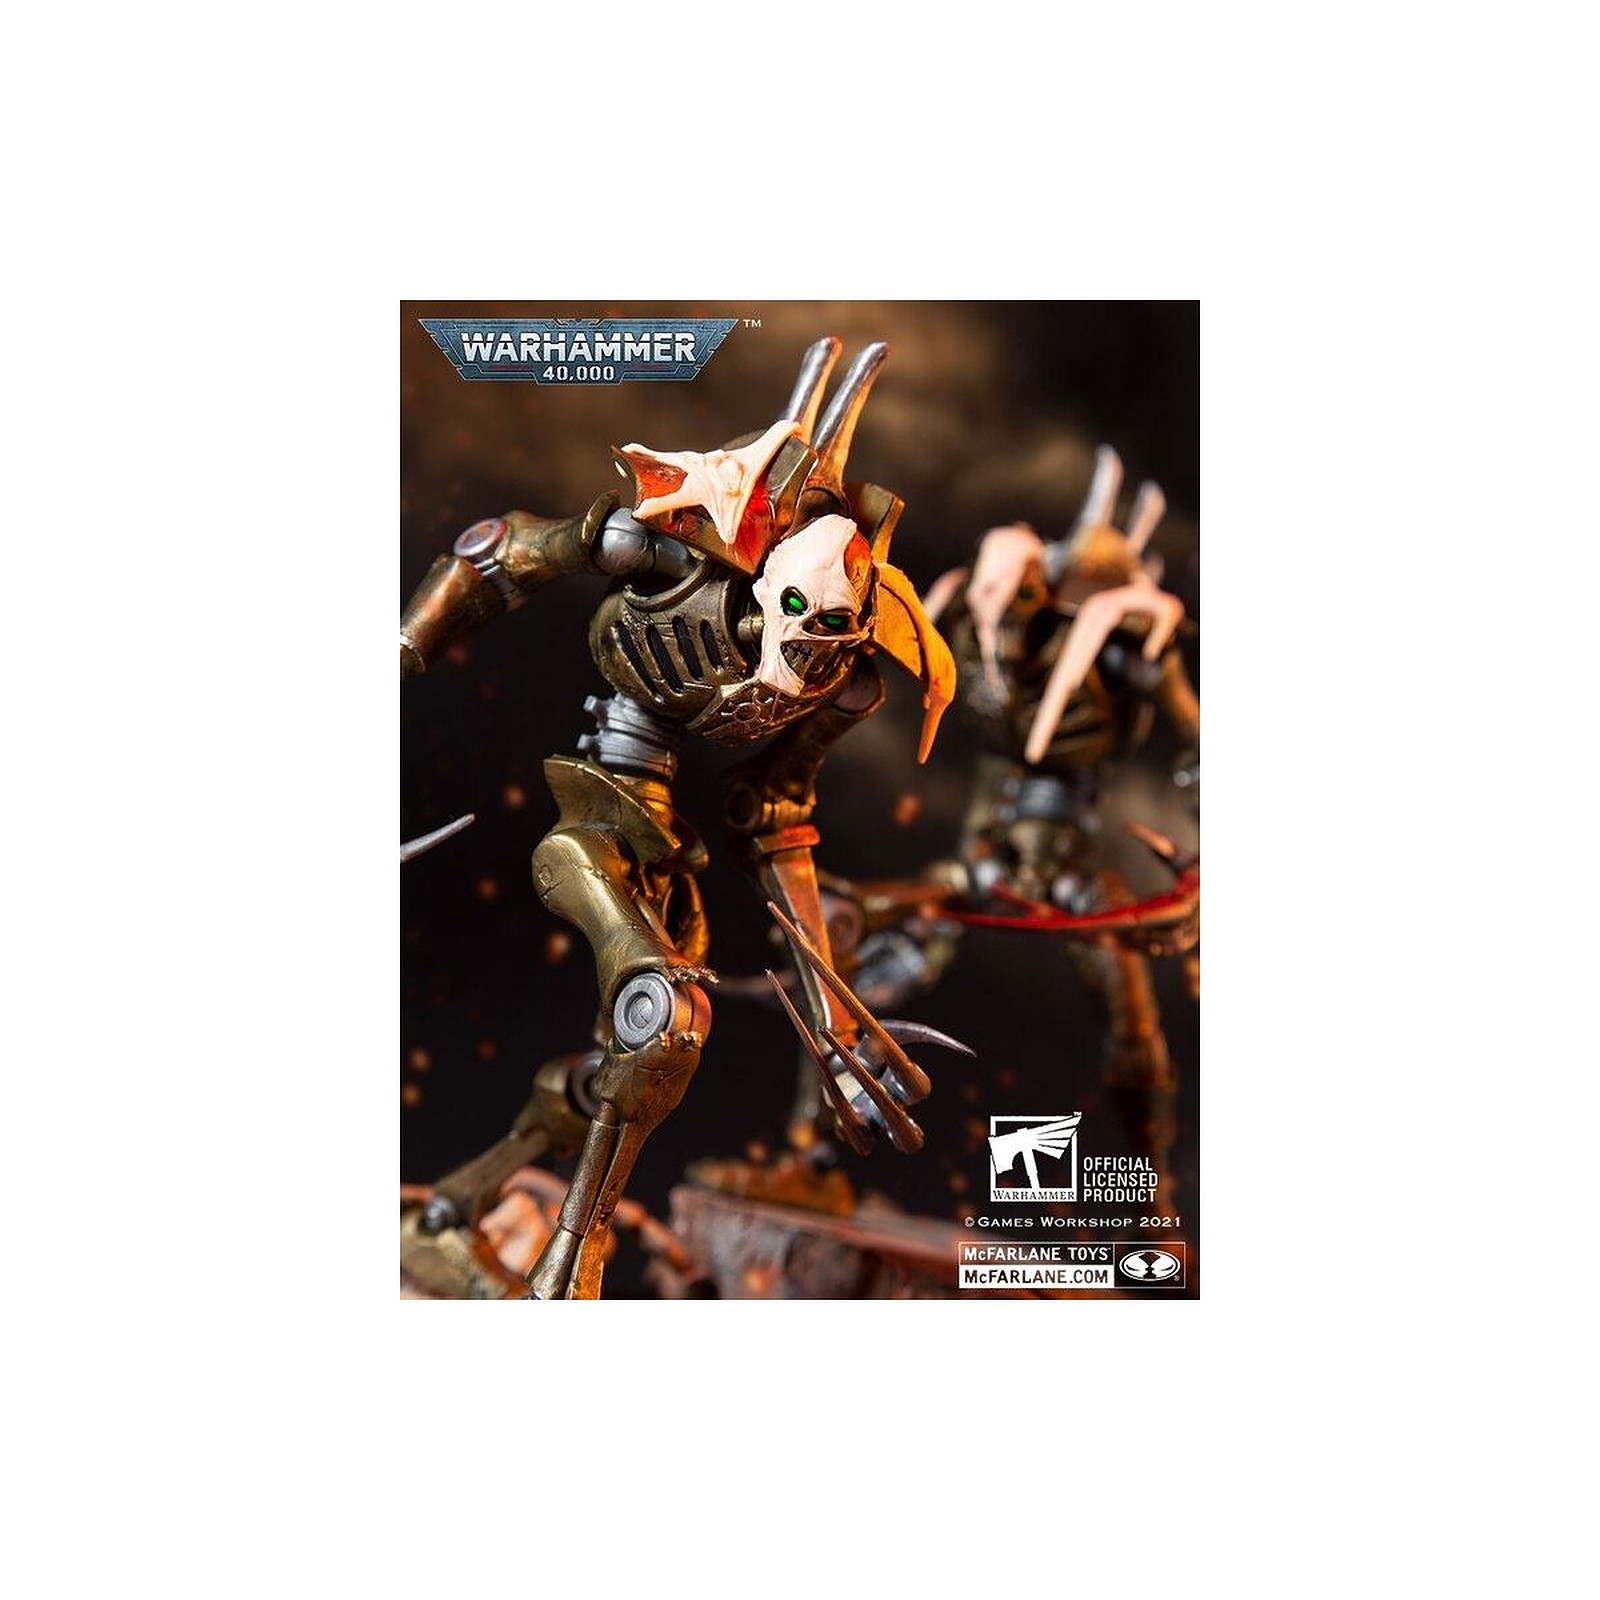 Warhammer 40k - Figurine Necron Flayed One 18 cm - Figurines McFarlane Toys